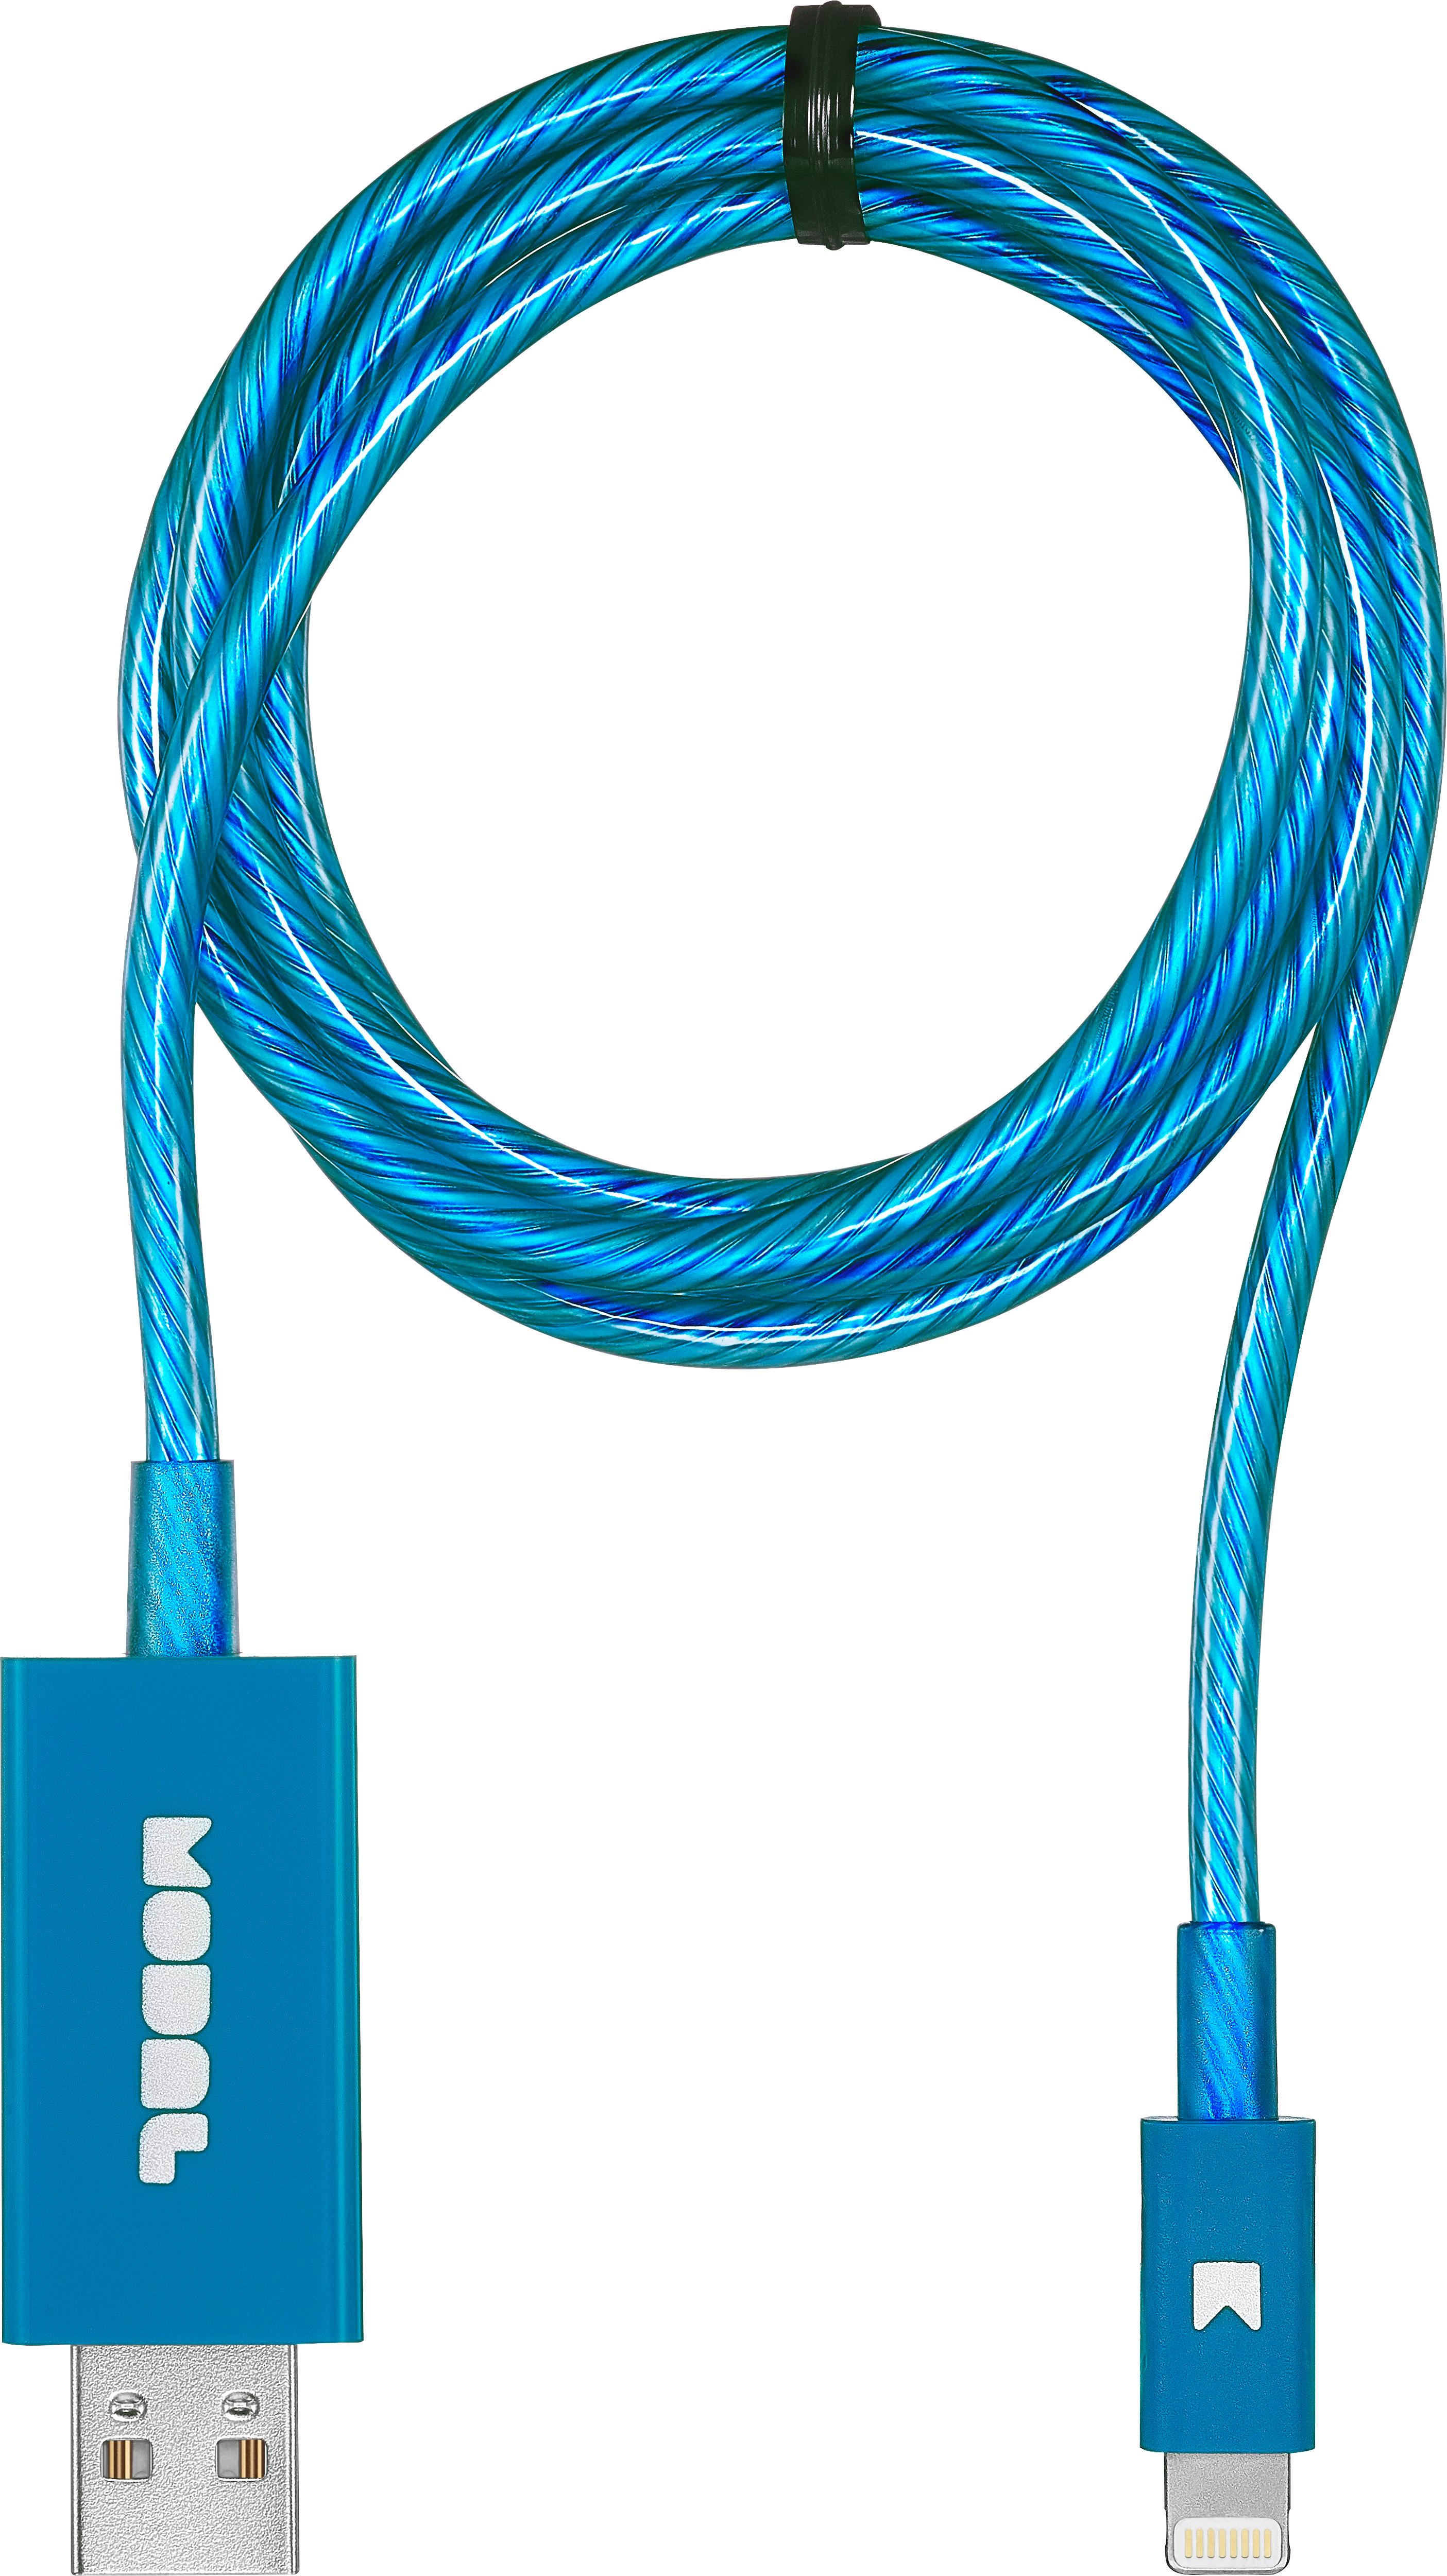 Compre Cable De Carga De Silicona, Cable Usb Lightning Certificado Por Mfi,  Cable De Carga Rápida Tpye-c, Cable Micro Oem Odm 1m-3m y Cable De Carga de  China por 4.41 USD